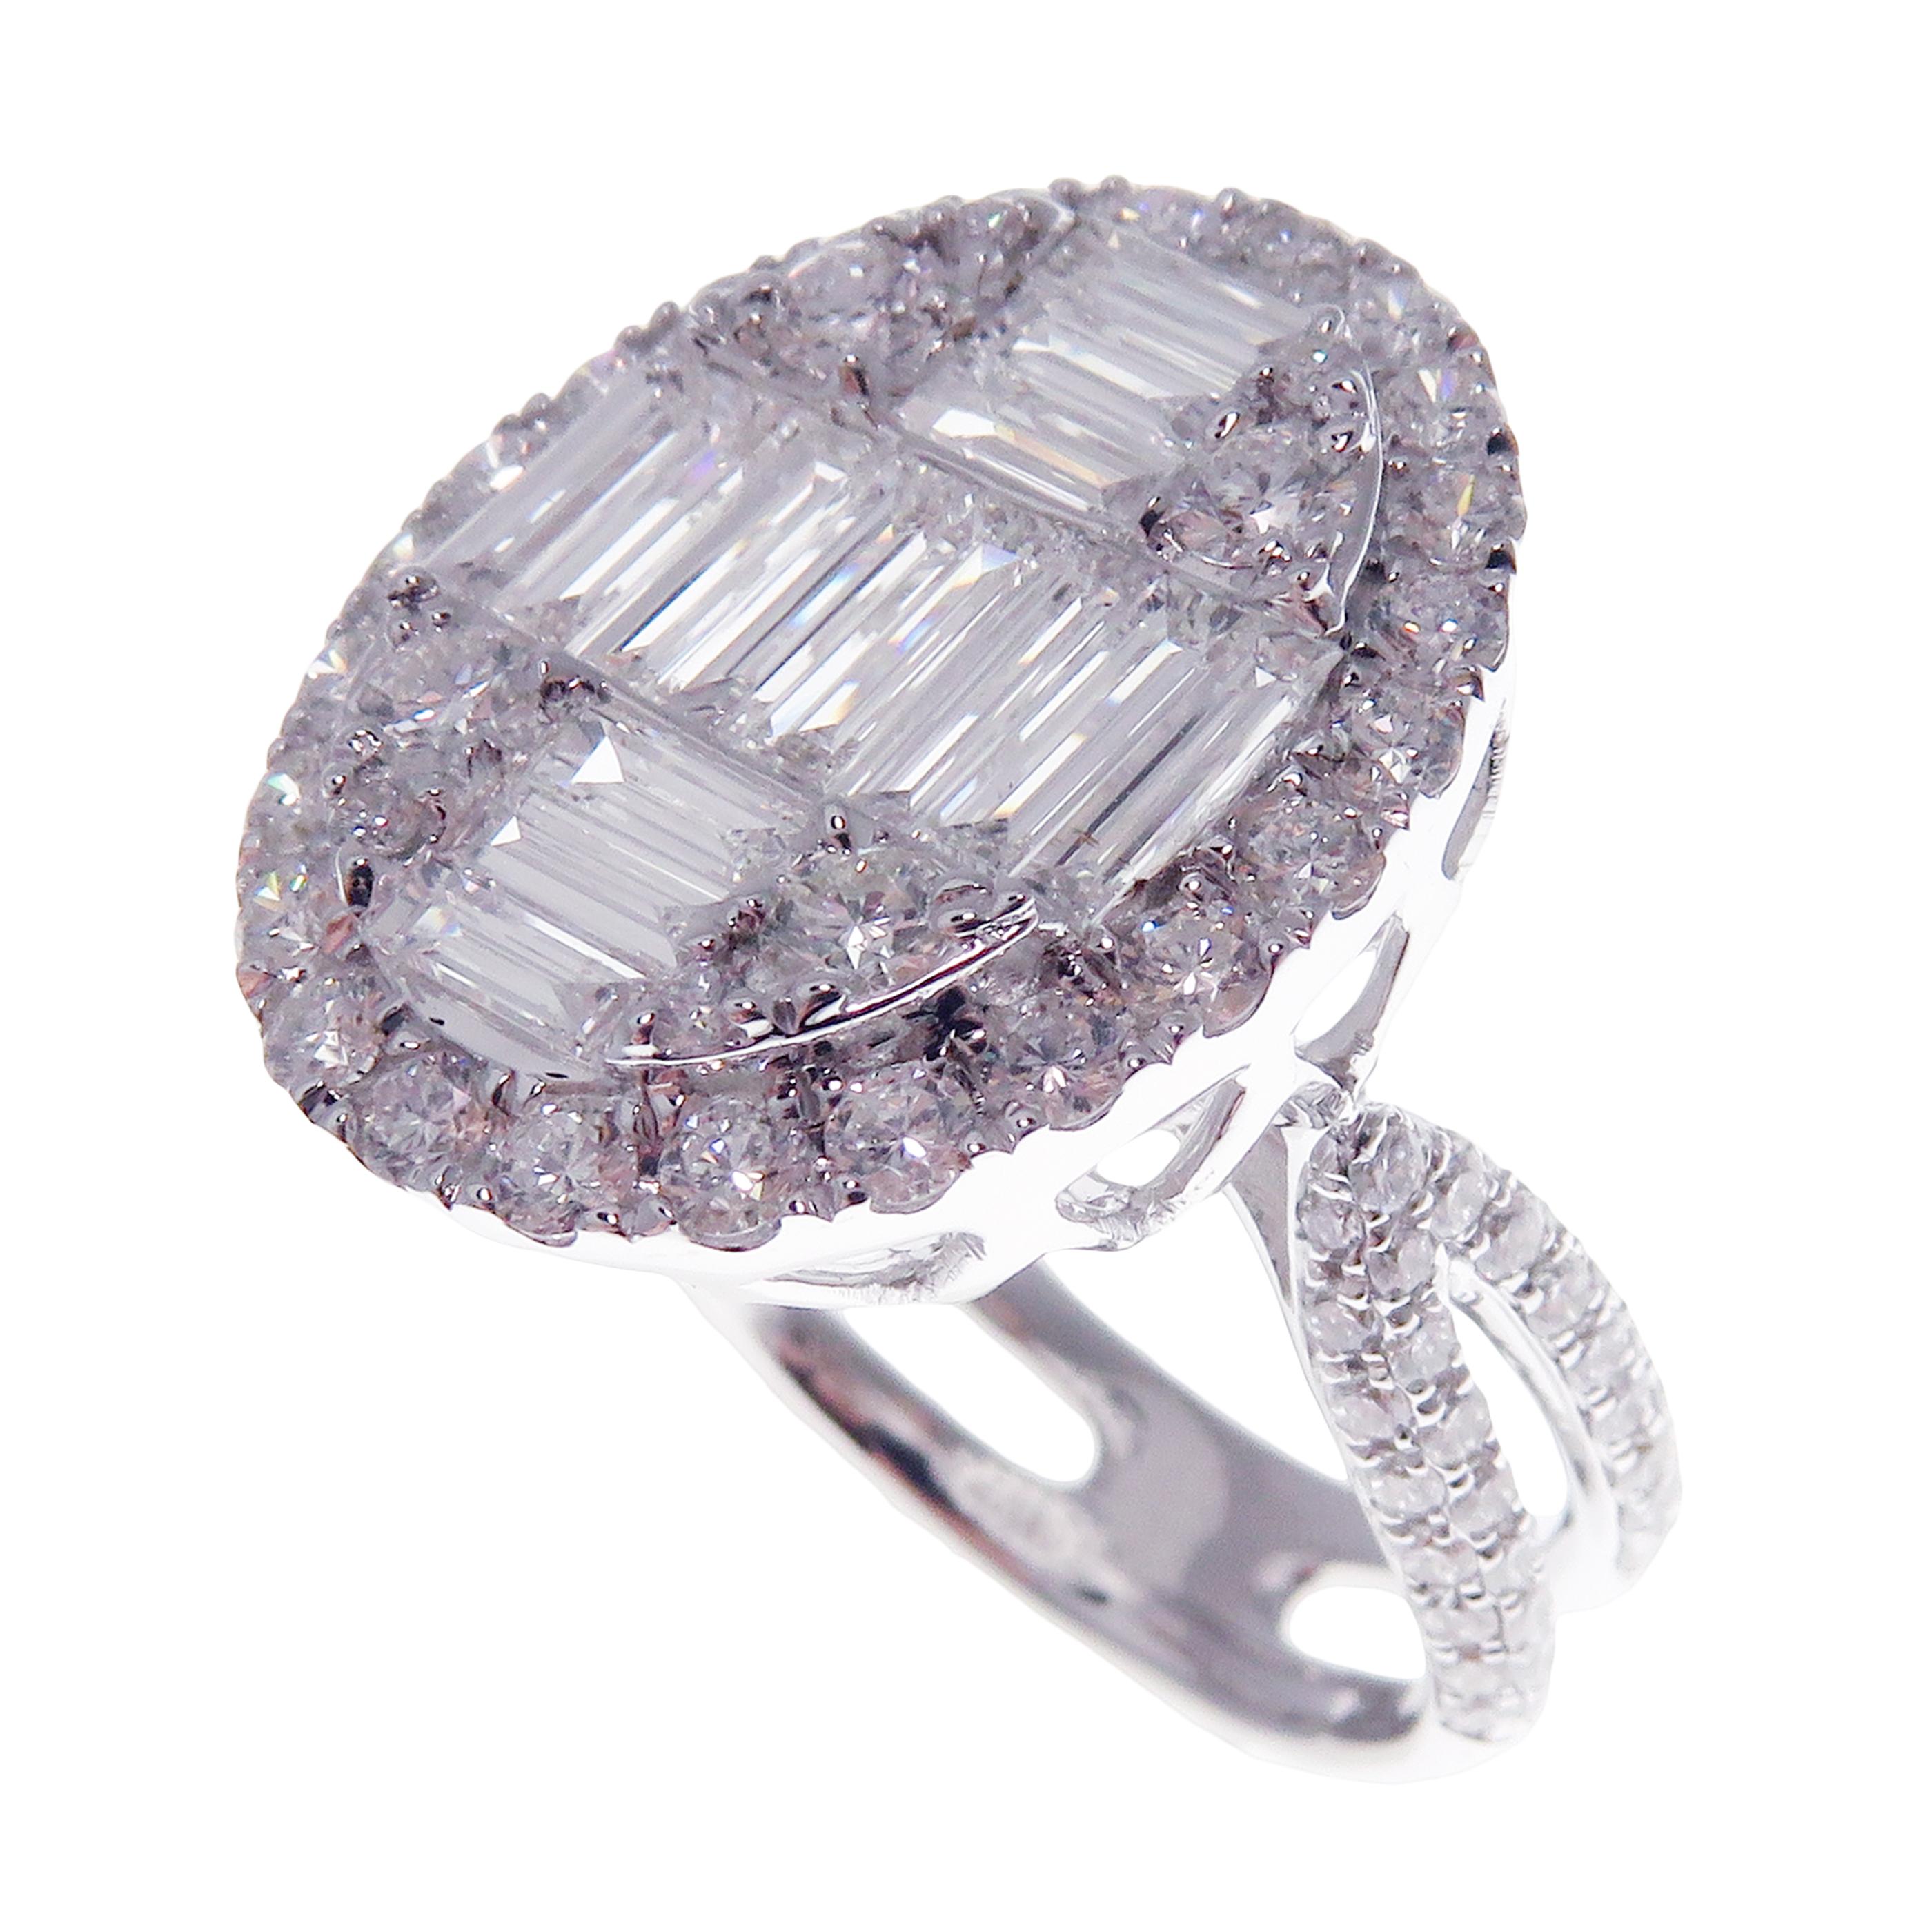 Dieser ovale Baguette-Diamantring ist aus 18 Karat Weißgold gefertigt und wiegt insgesamt ca. 2,92 Karat weiße Diamanten in SI-V-Qualität. Diamantverzierungen am Ringschaft und ein modernes Design unterstreichen die Schönheit des Rings. Dieser Ring